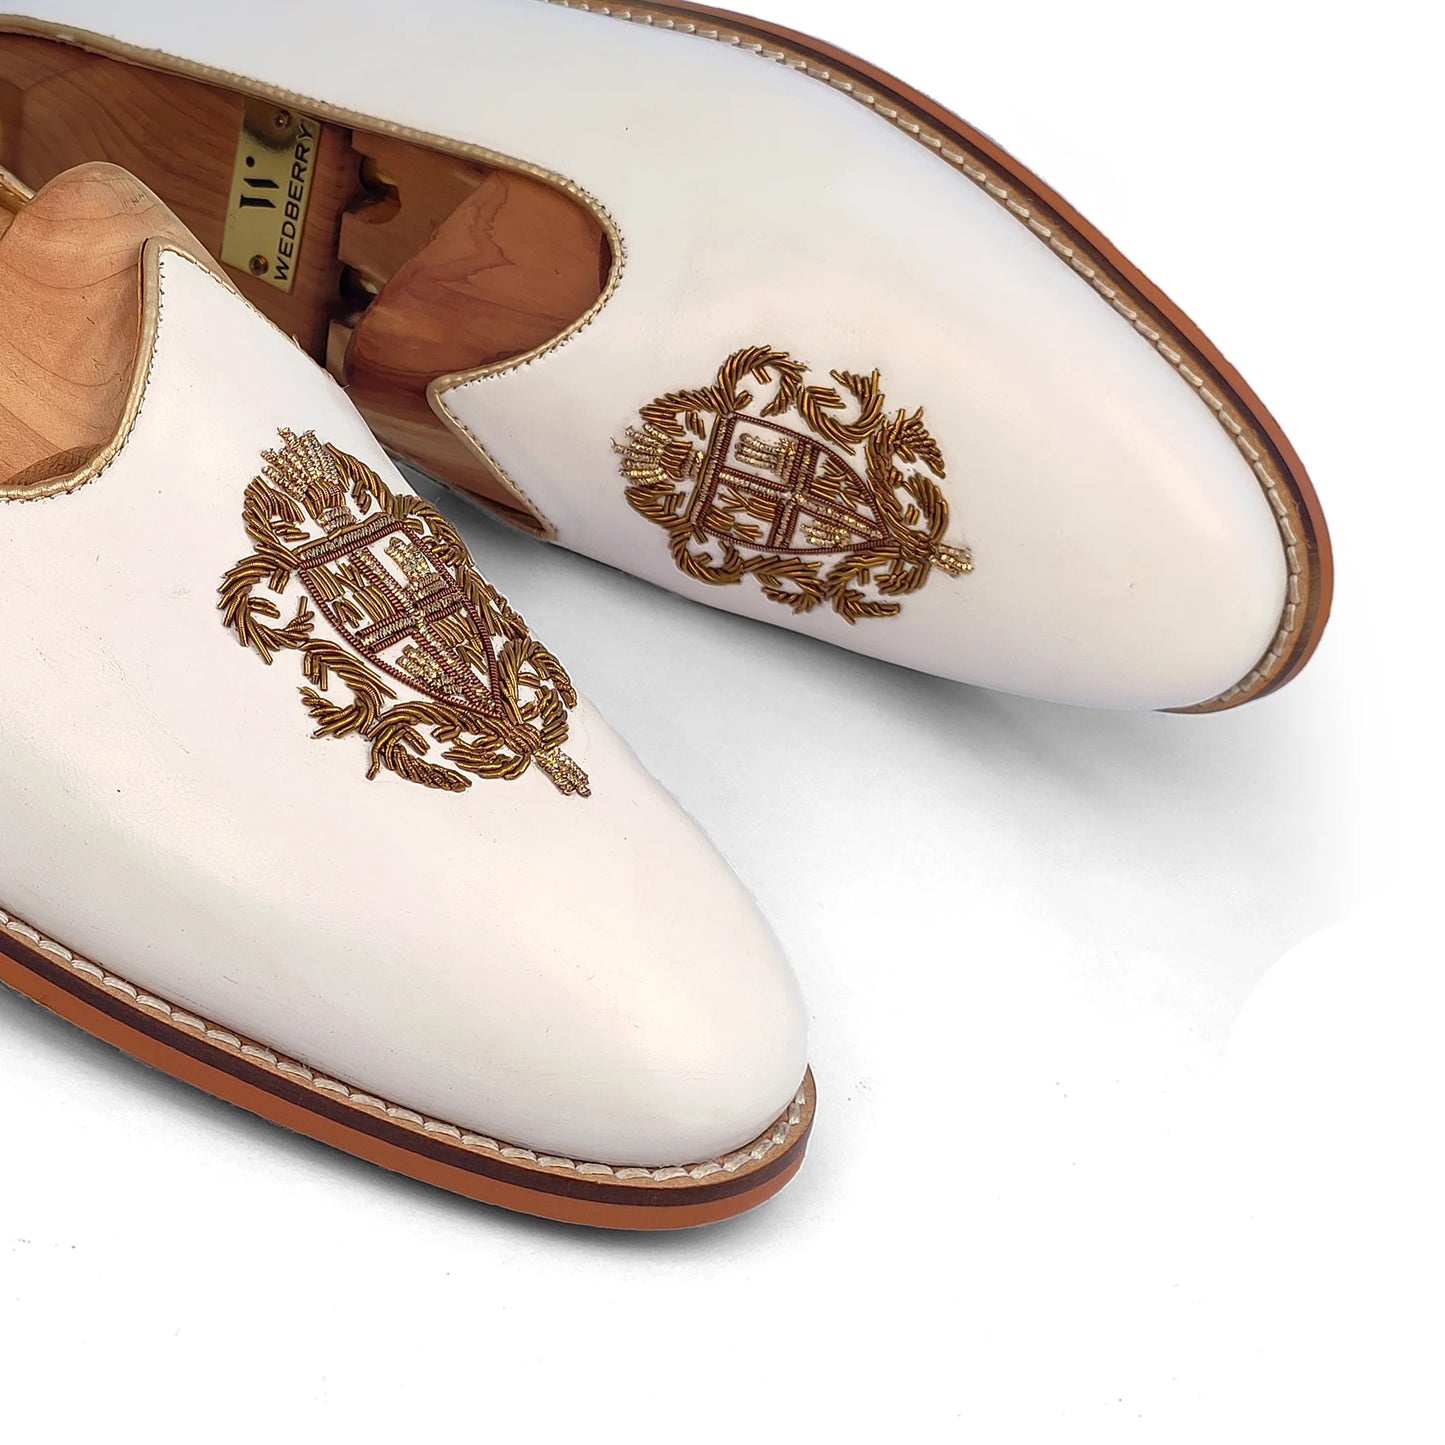 White Zardozi Handwork Wedding Ethnic Party Shoes Loafer for Men